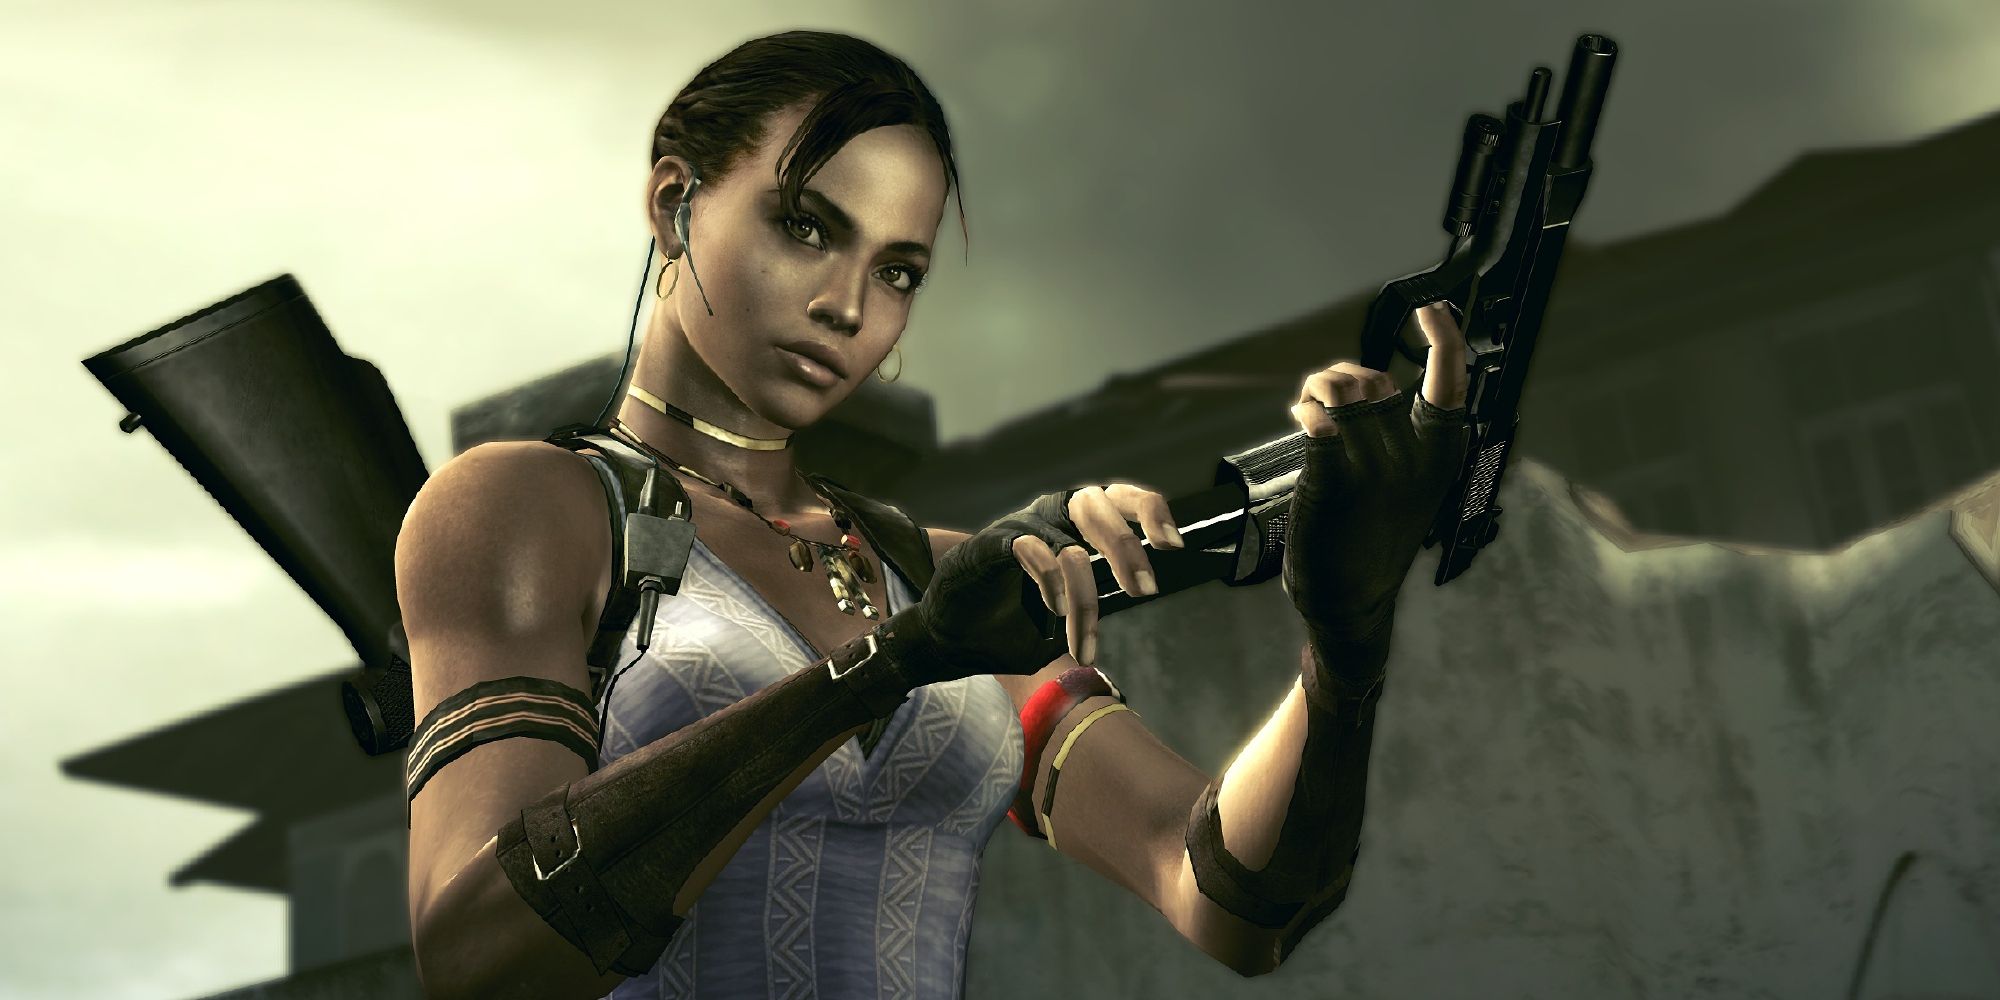 Sheva Alomar reloading her pistol in Resident Evil 5